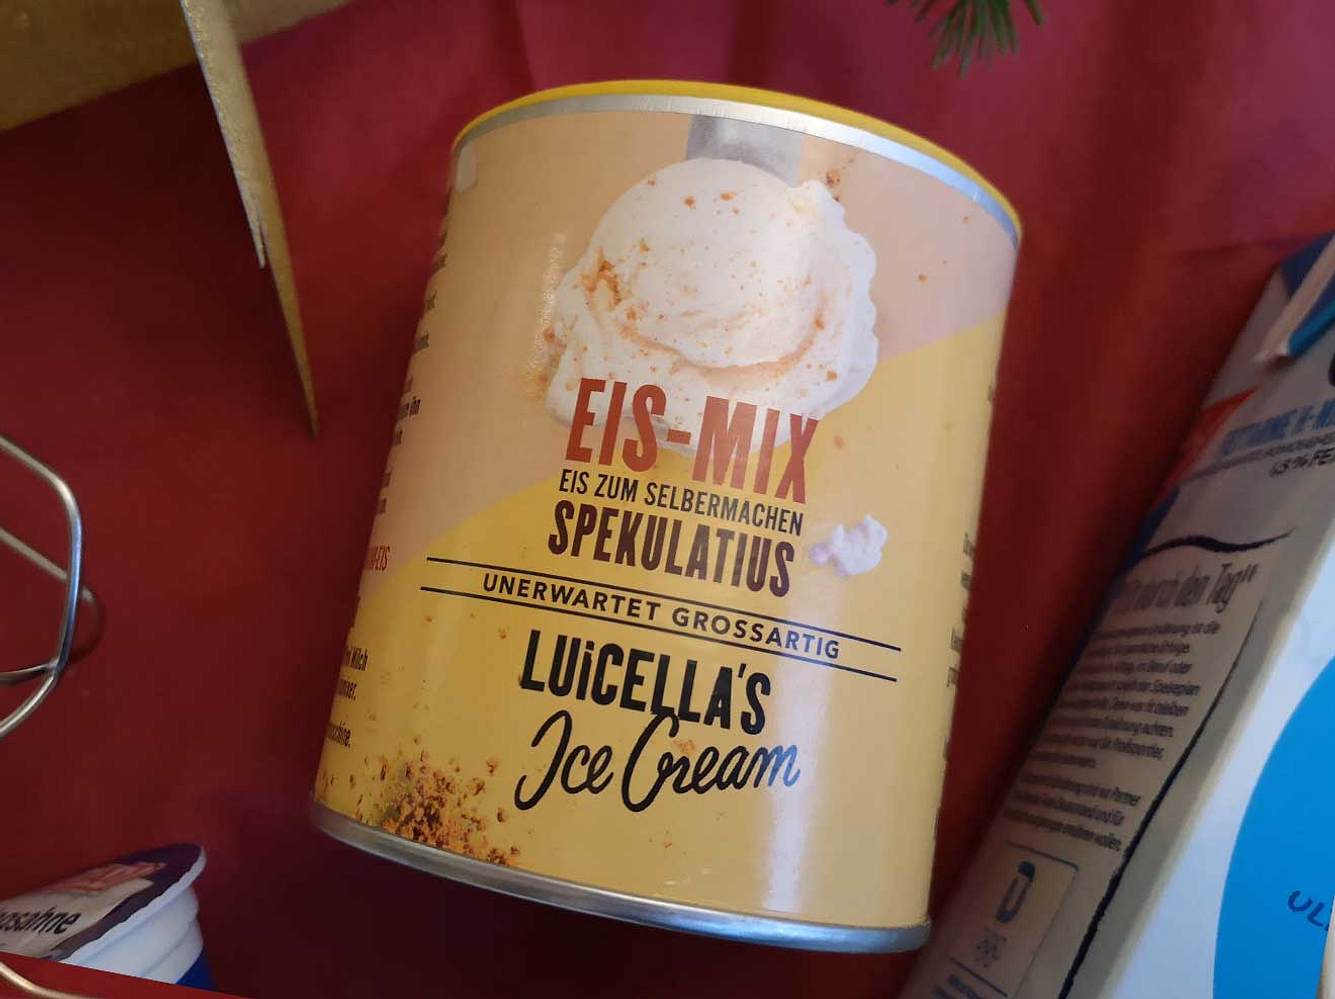 Mit dem Eis-Mix von Luicella's kannst du Spekulatius-Eis einfach selber machen.